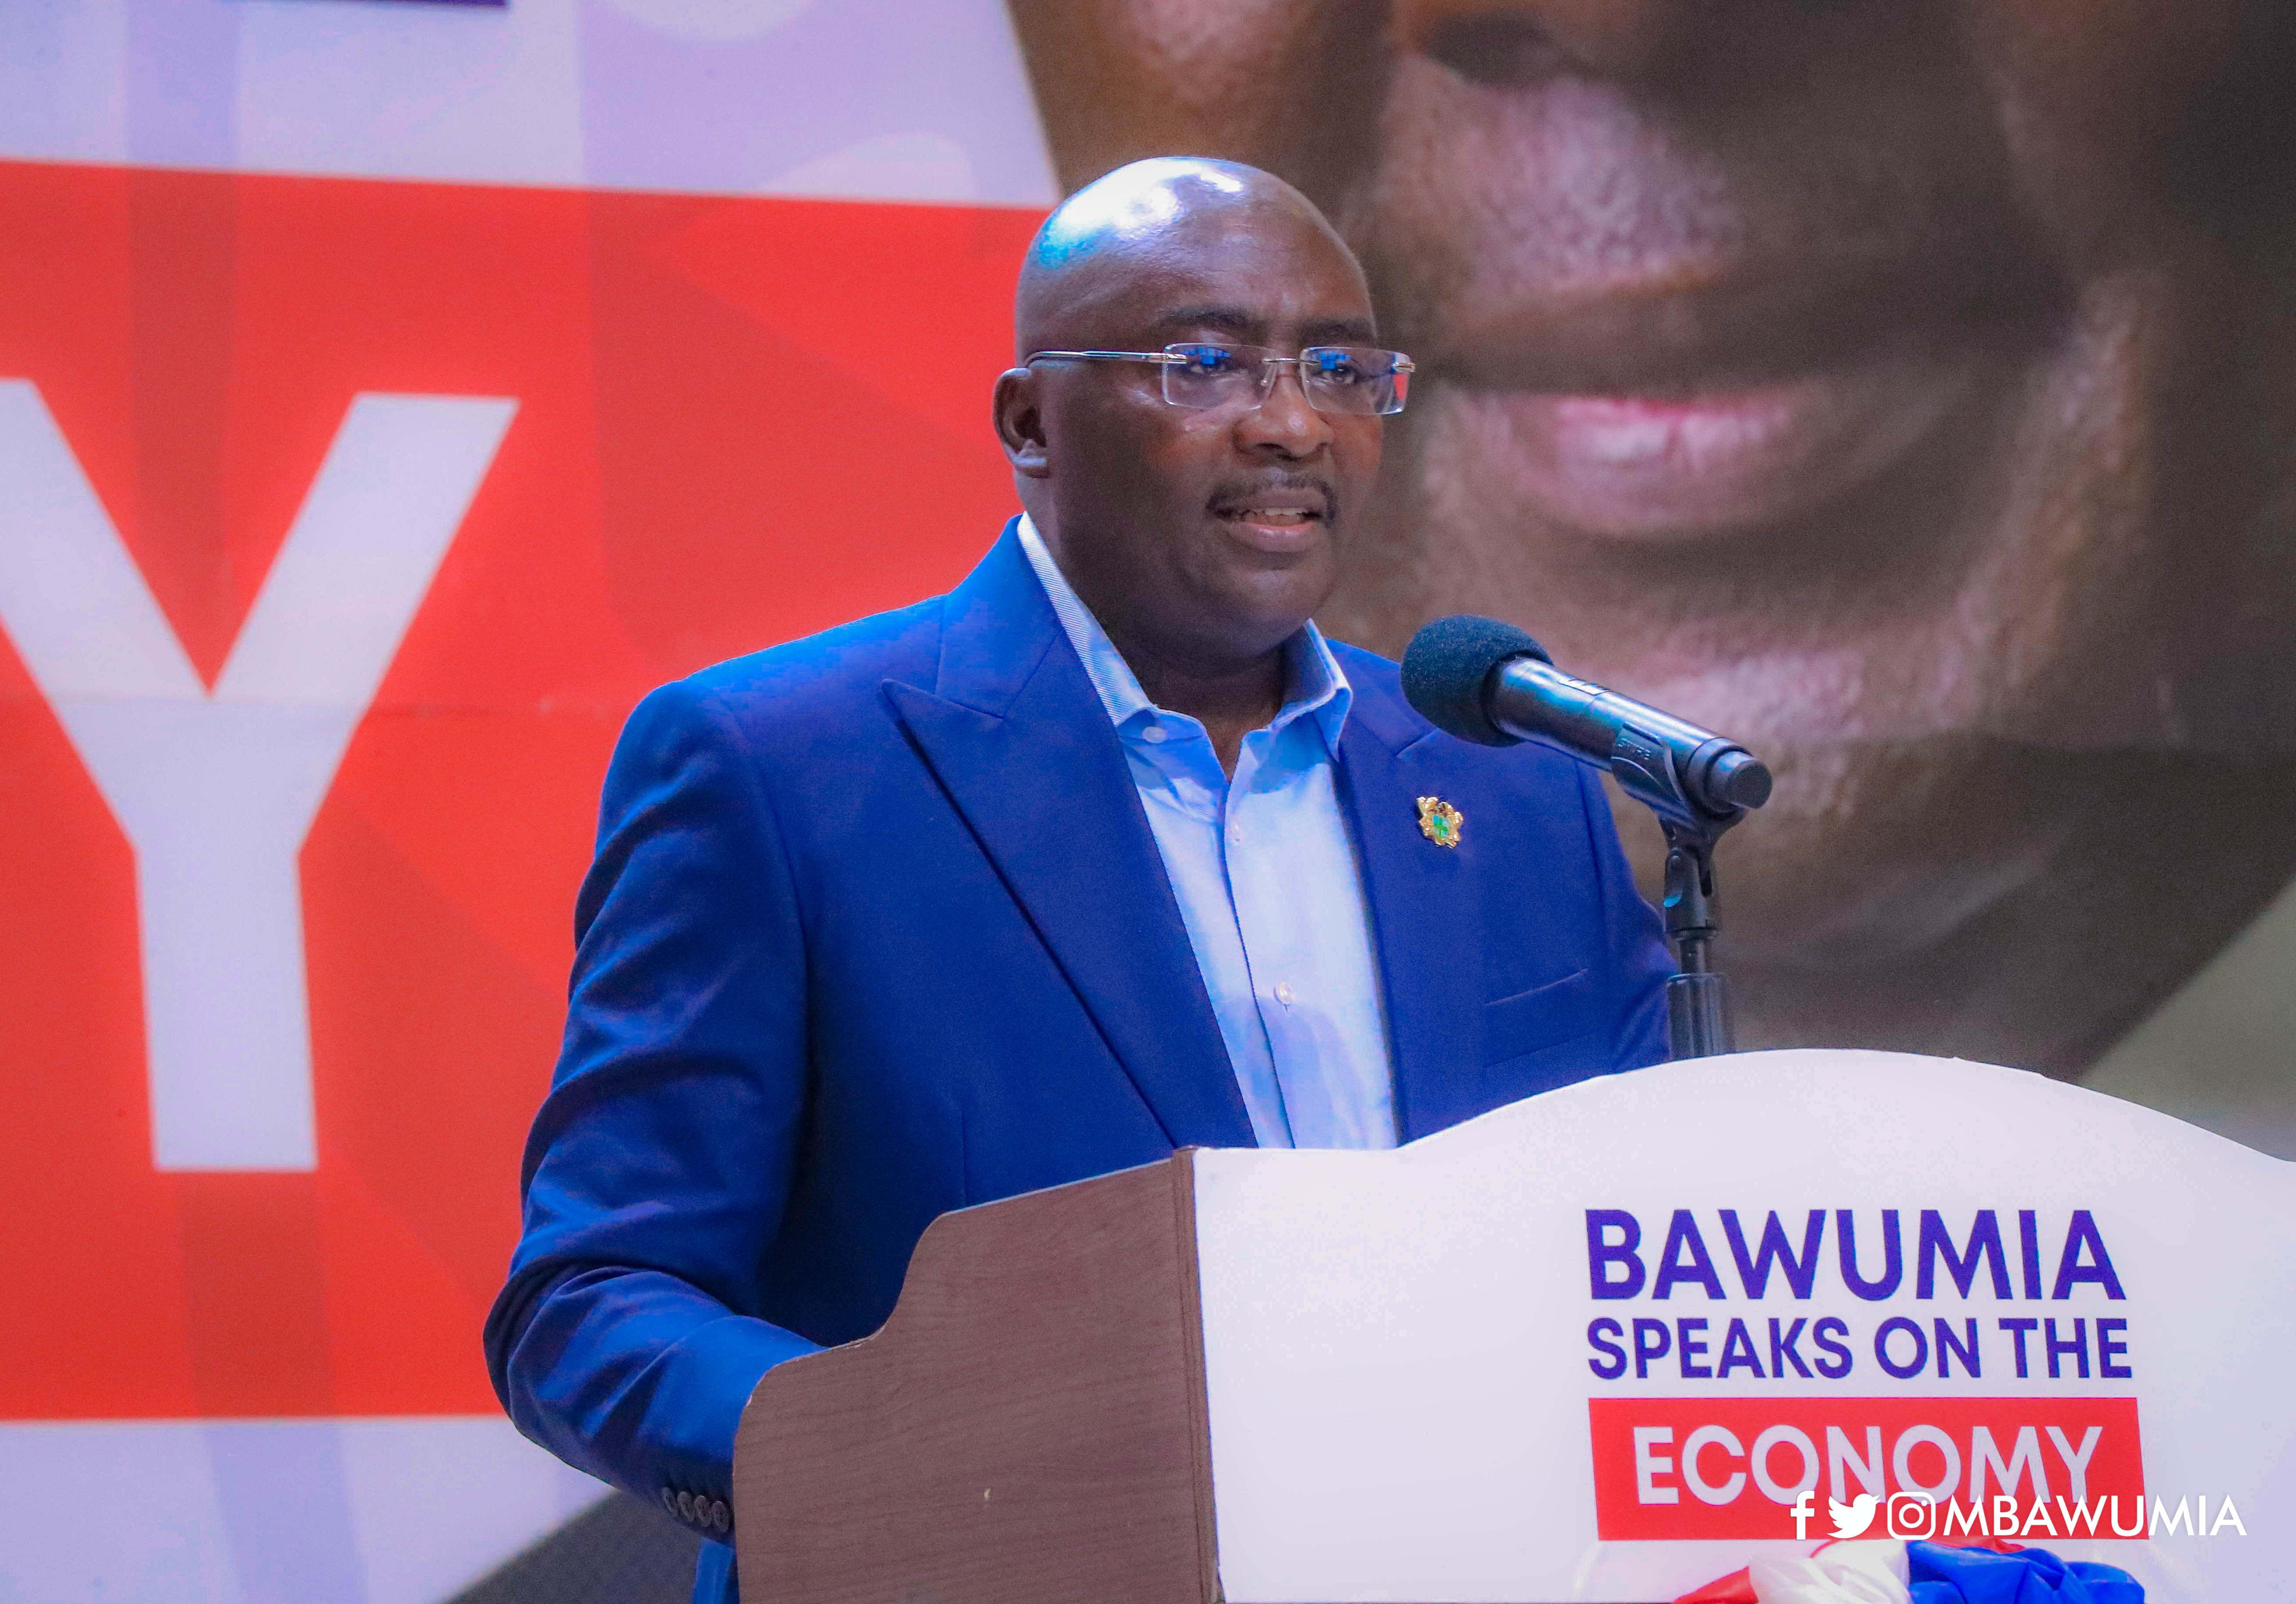 Bawumia delivered propaganda on the economy and did not address hardships — Economist